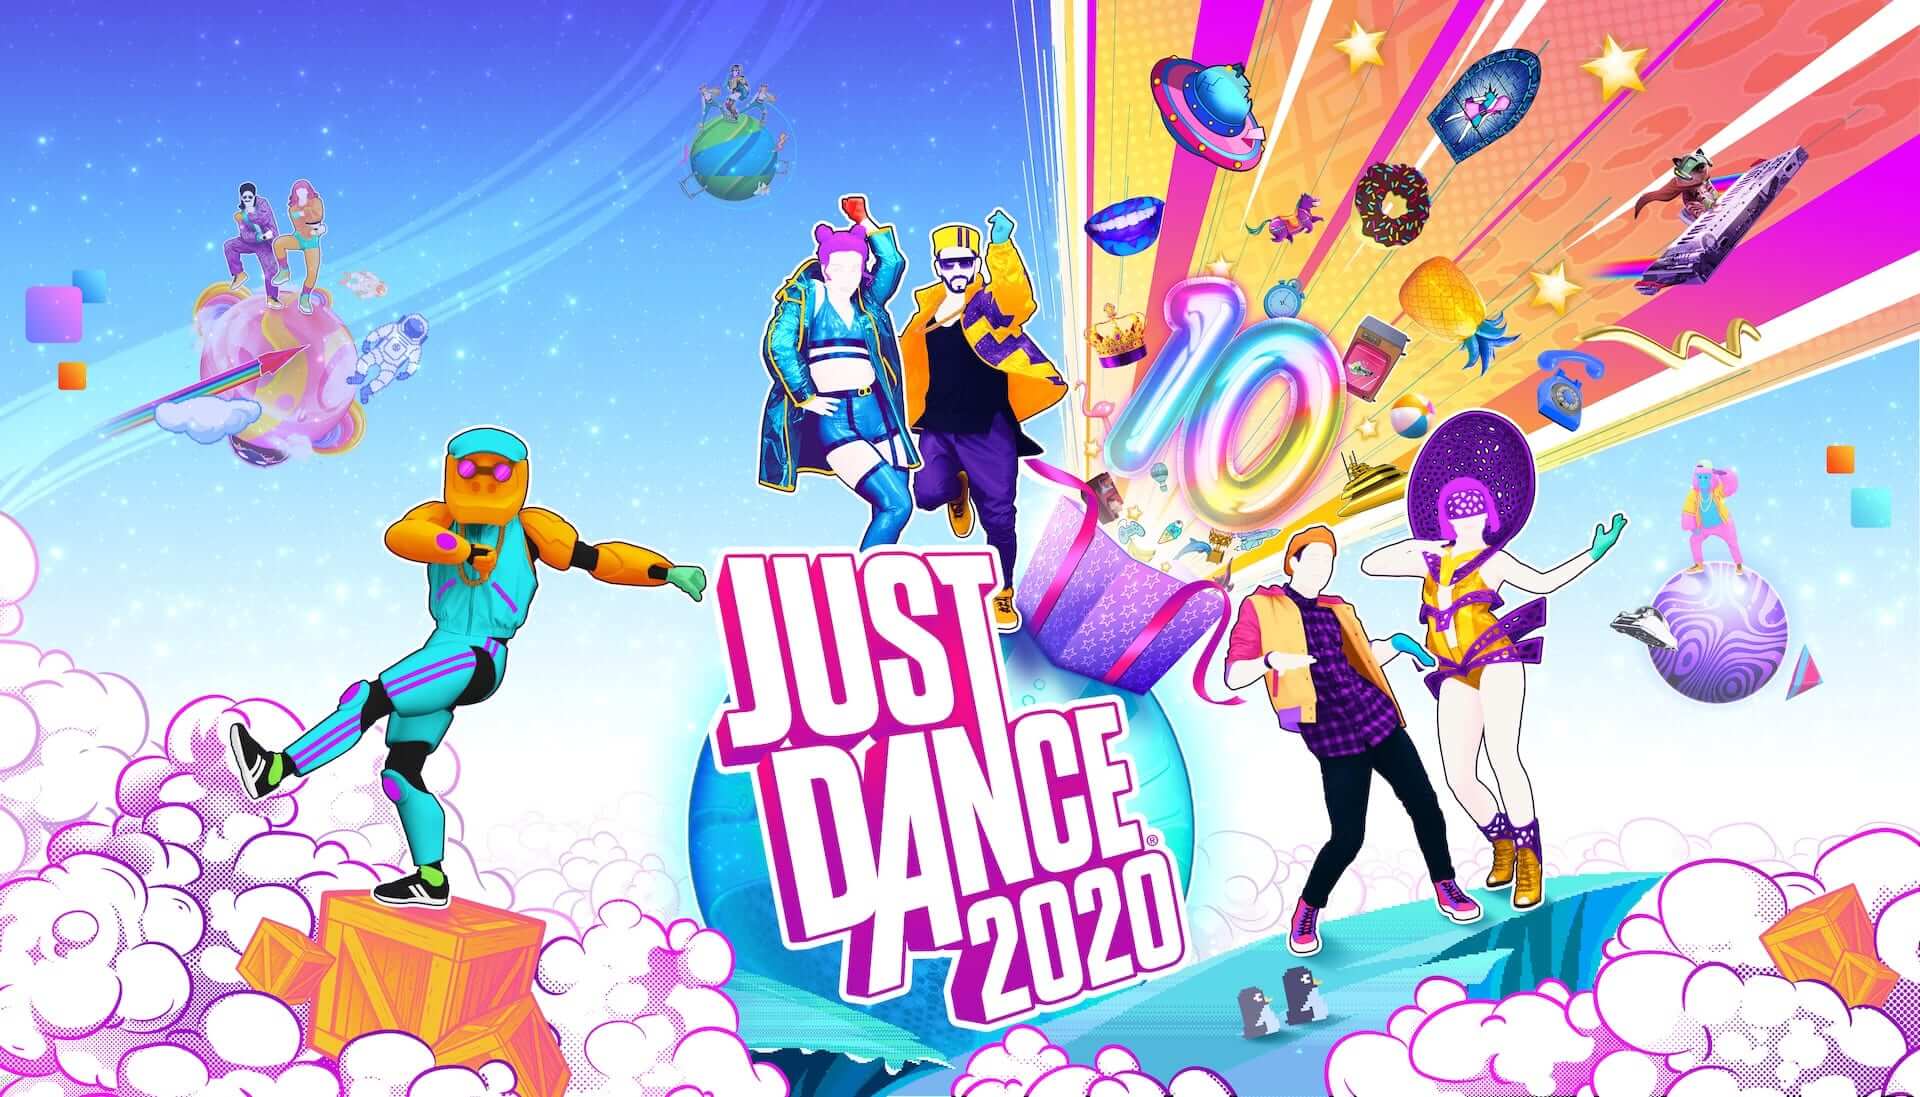 Ongewijzigd biologisch kip Just Dance 2020 is de laatste Wii-game ooit - Gamerverse